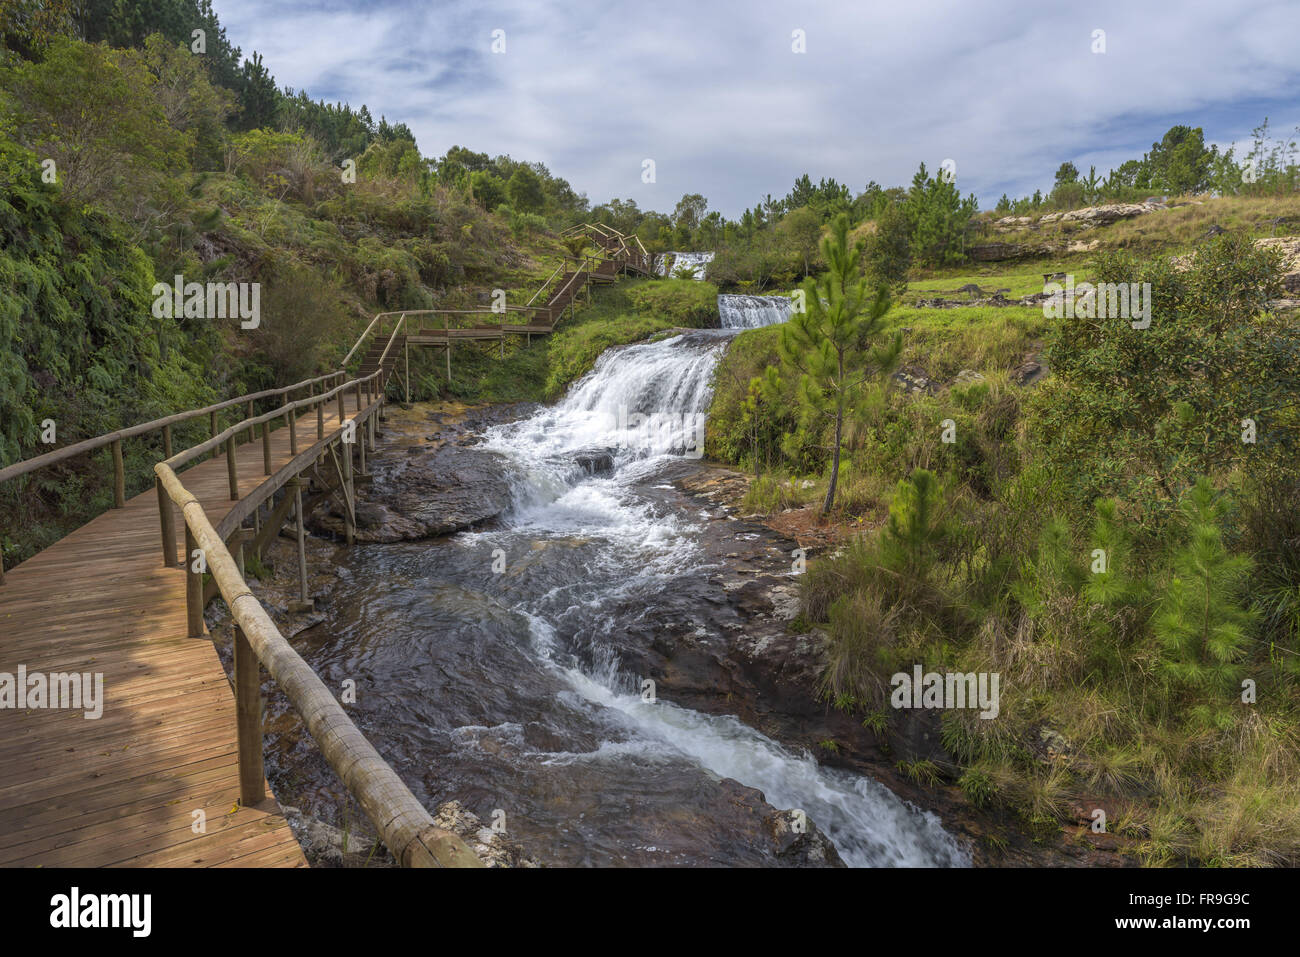 A Cachoeira com estrutura de visitação em fazenda na região dos Campos Gerais Foto Stock